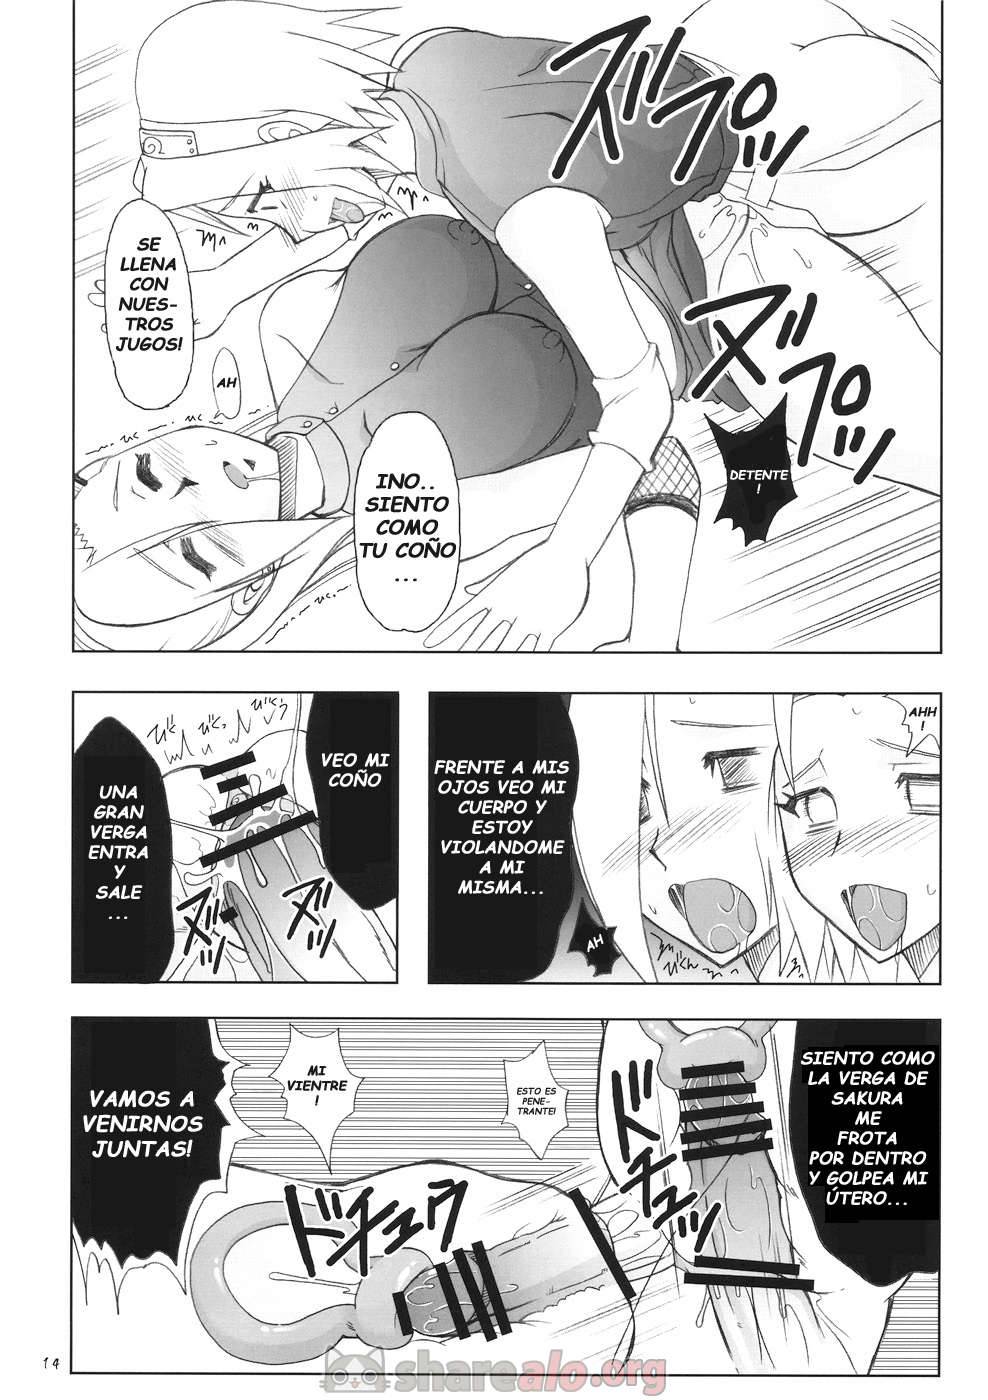 Futanari Kokoro Tenshin (Sakura se Folla a Ino Yamanaka) - 14 - Comics Porno - Hentai Manga - Cartoon XXX